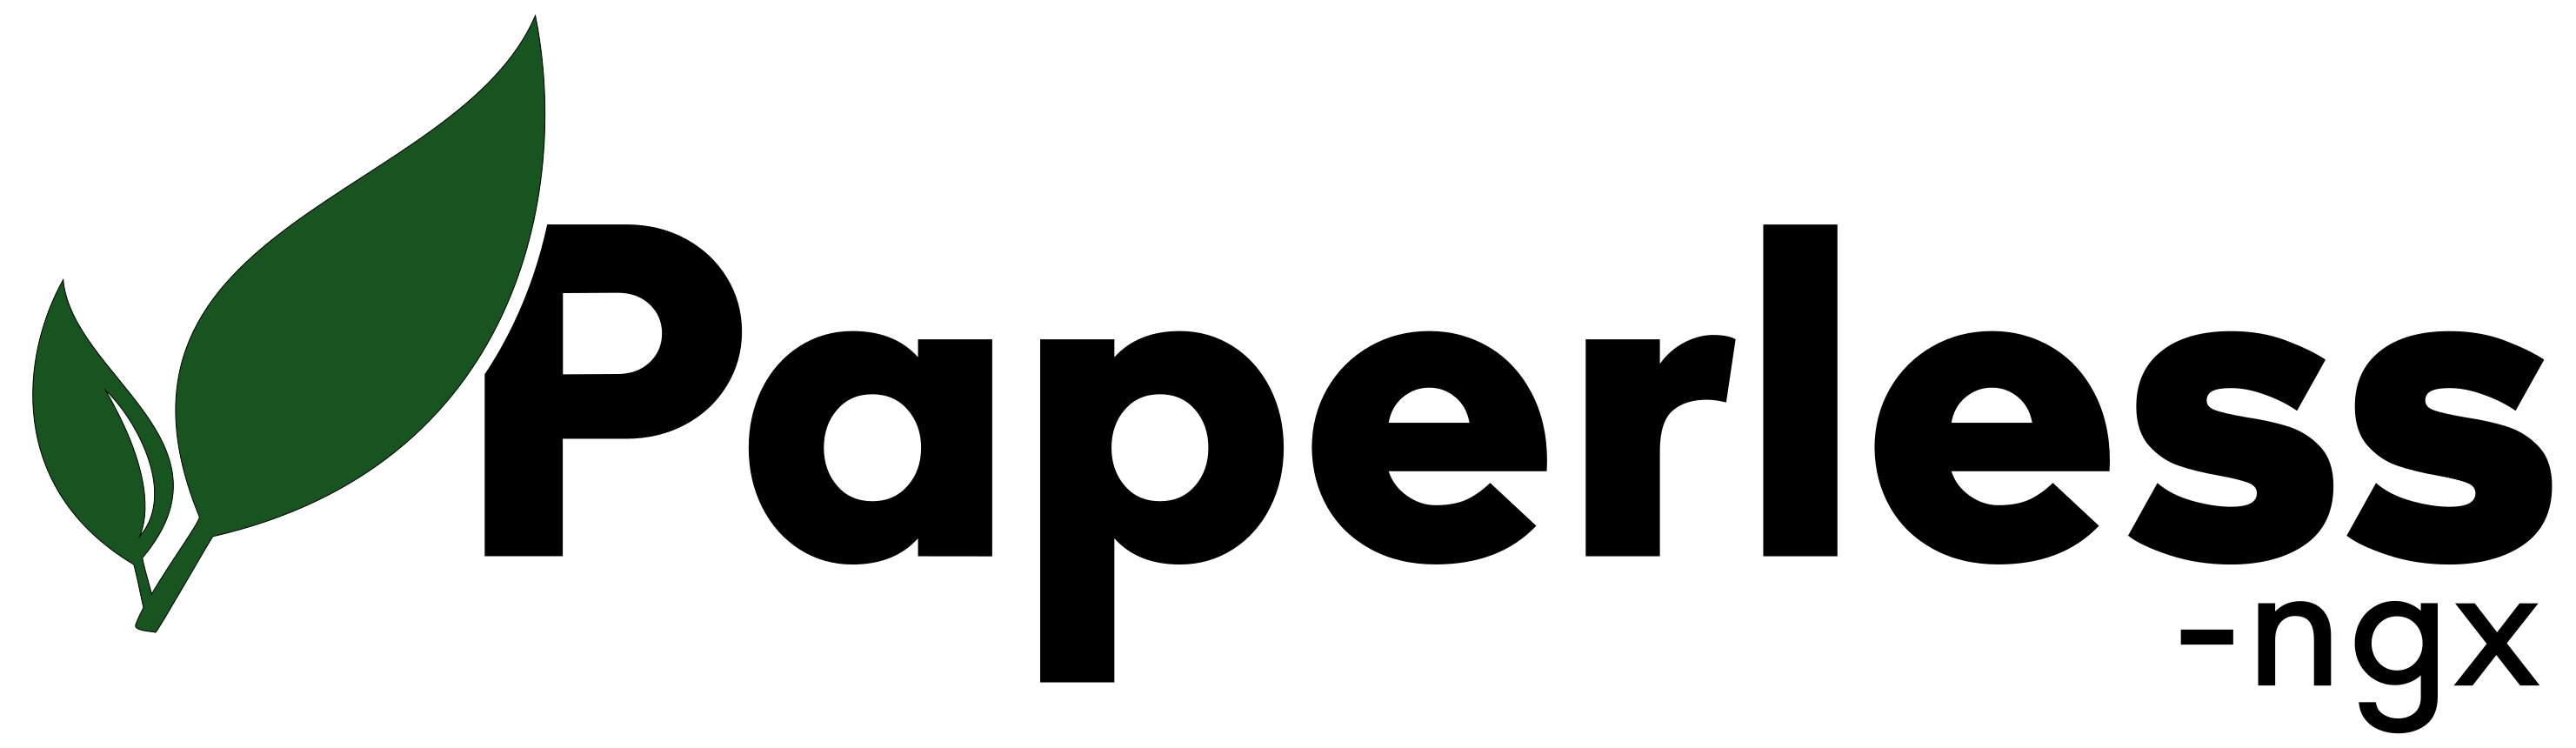 paperless-ngx-logo